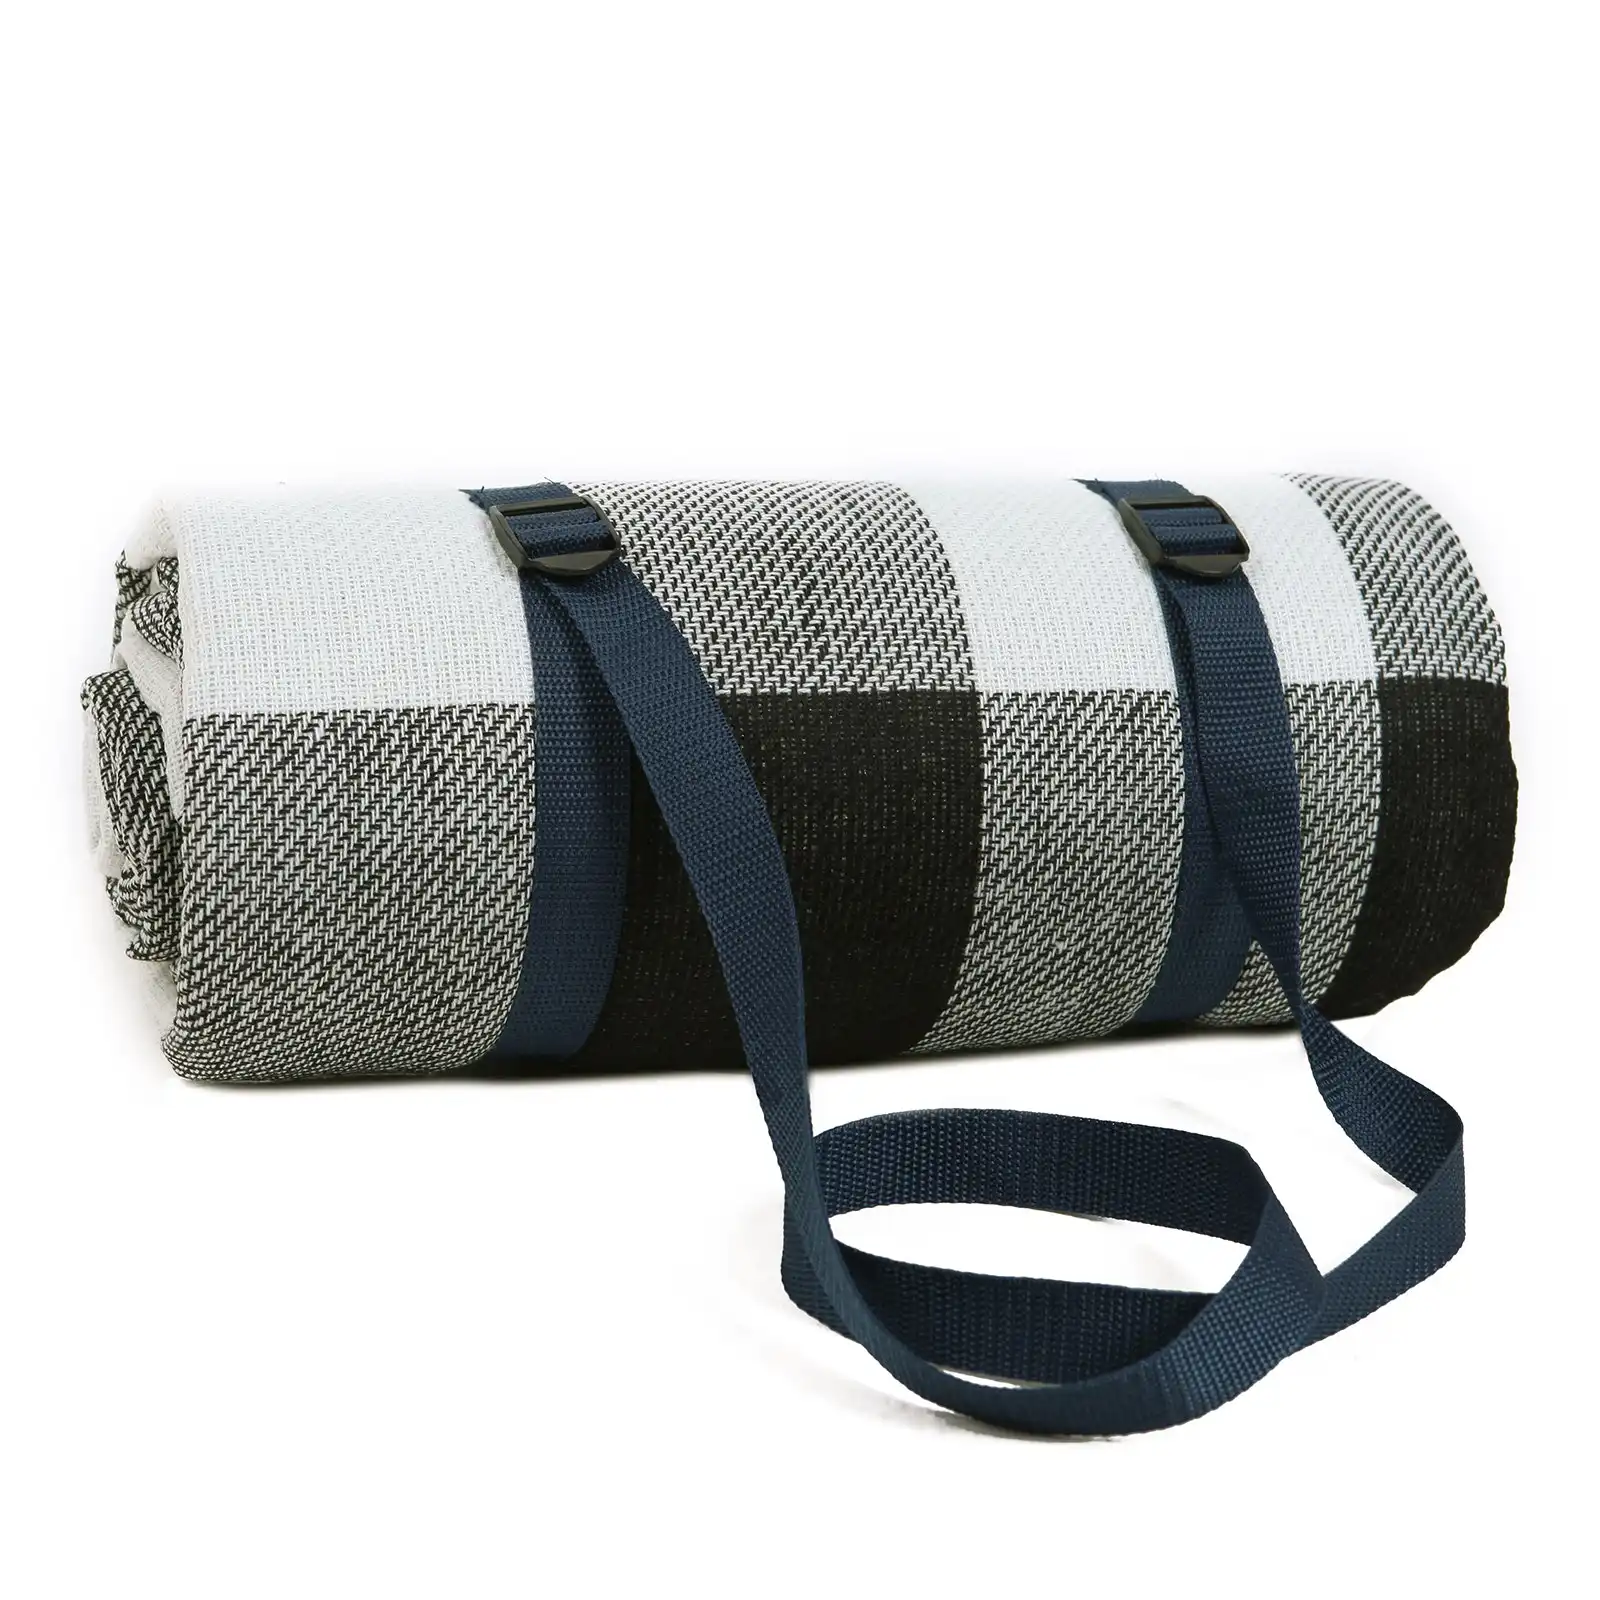 Viviendo 200x200cm Waterproof Outdoor Picnic Rug Blanket Classic - Grey Tile